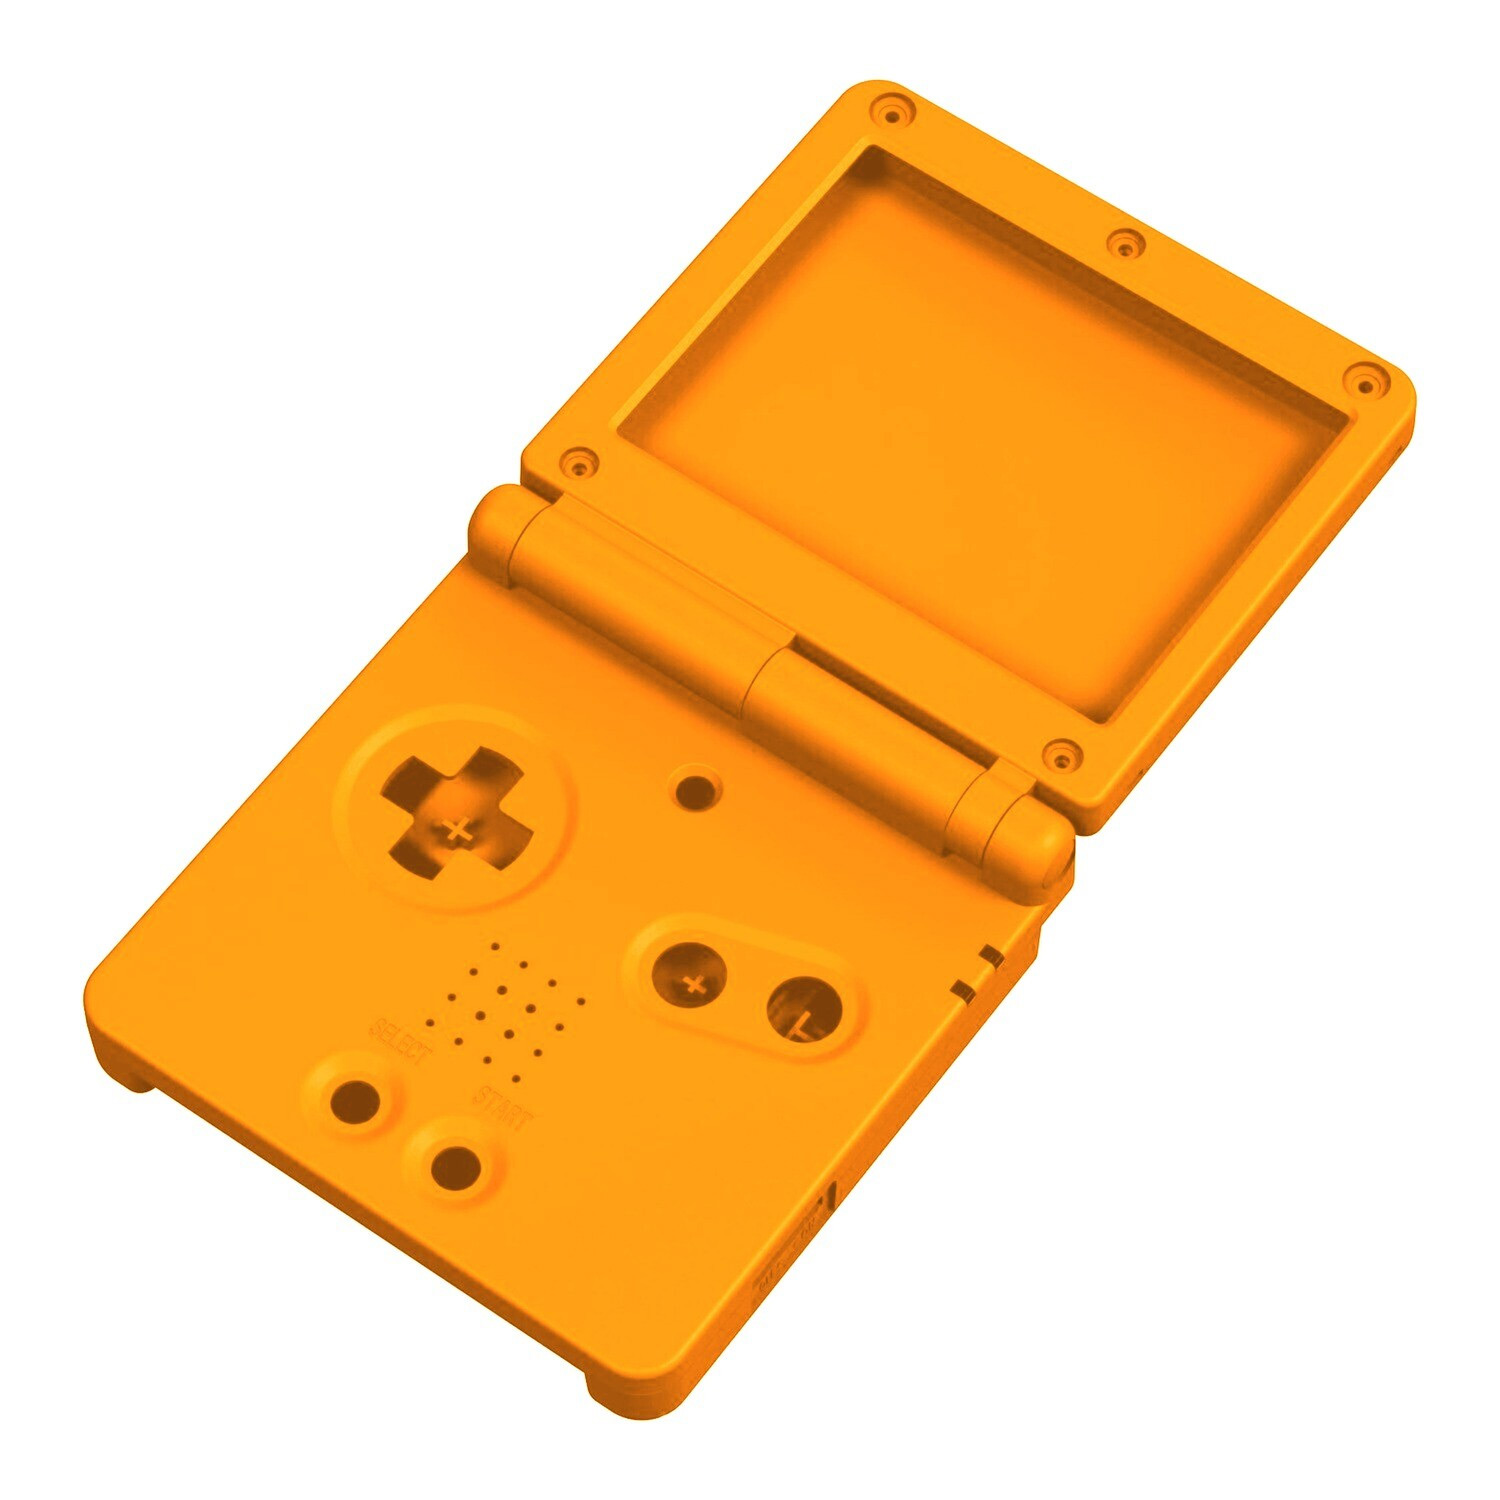 Gehäuse (Solid Yellow) für Game Boy Advance SP